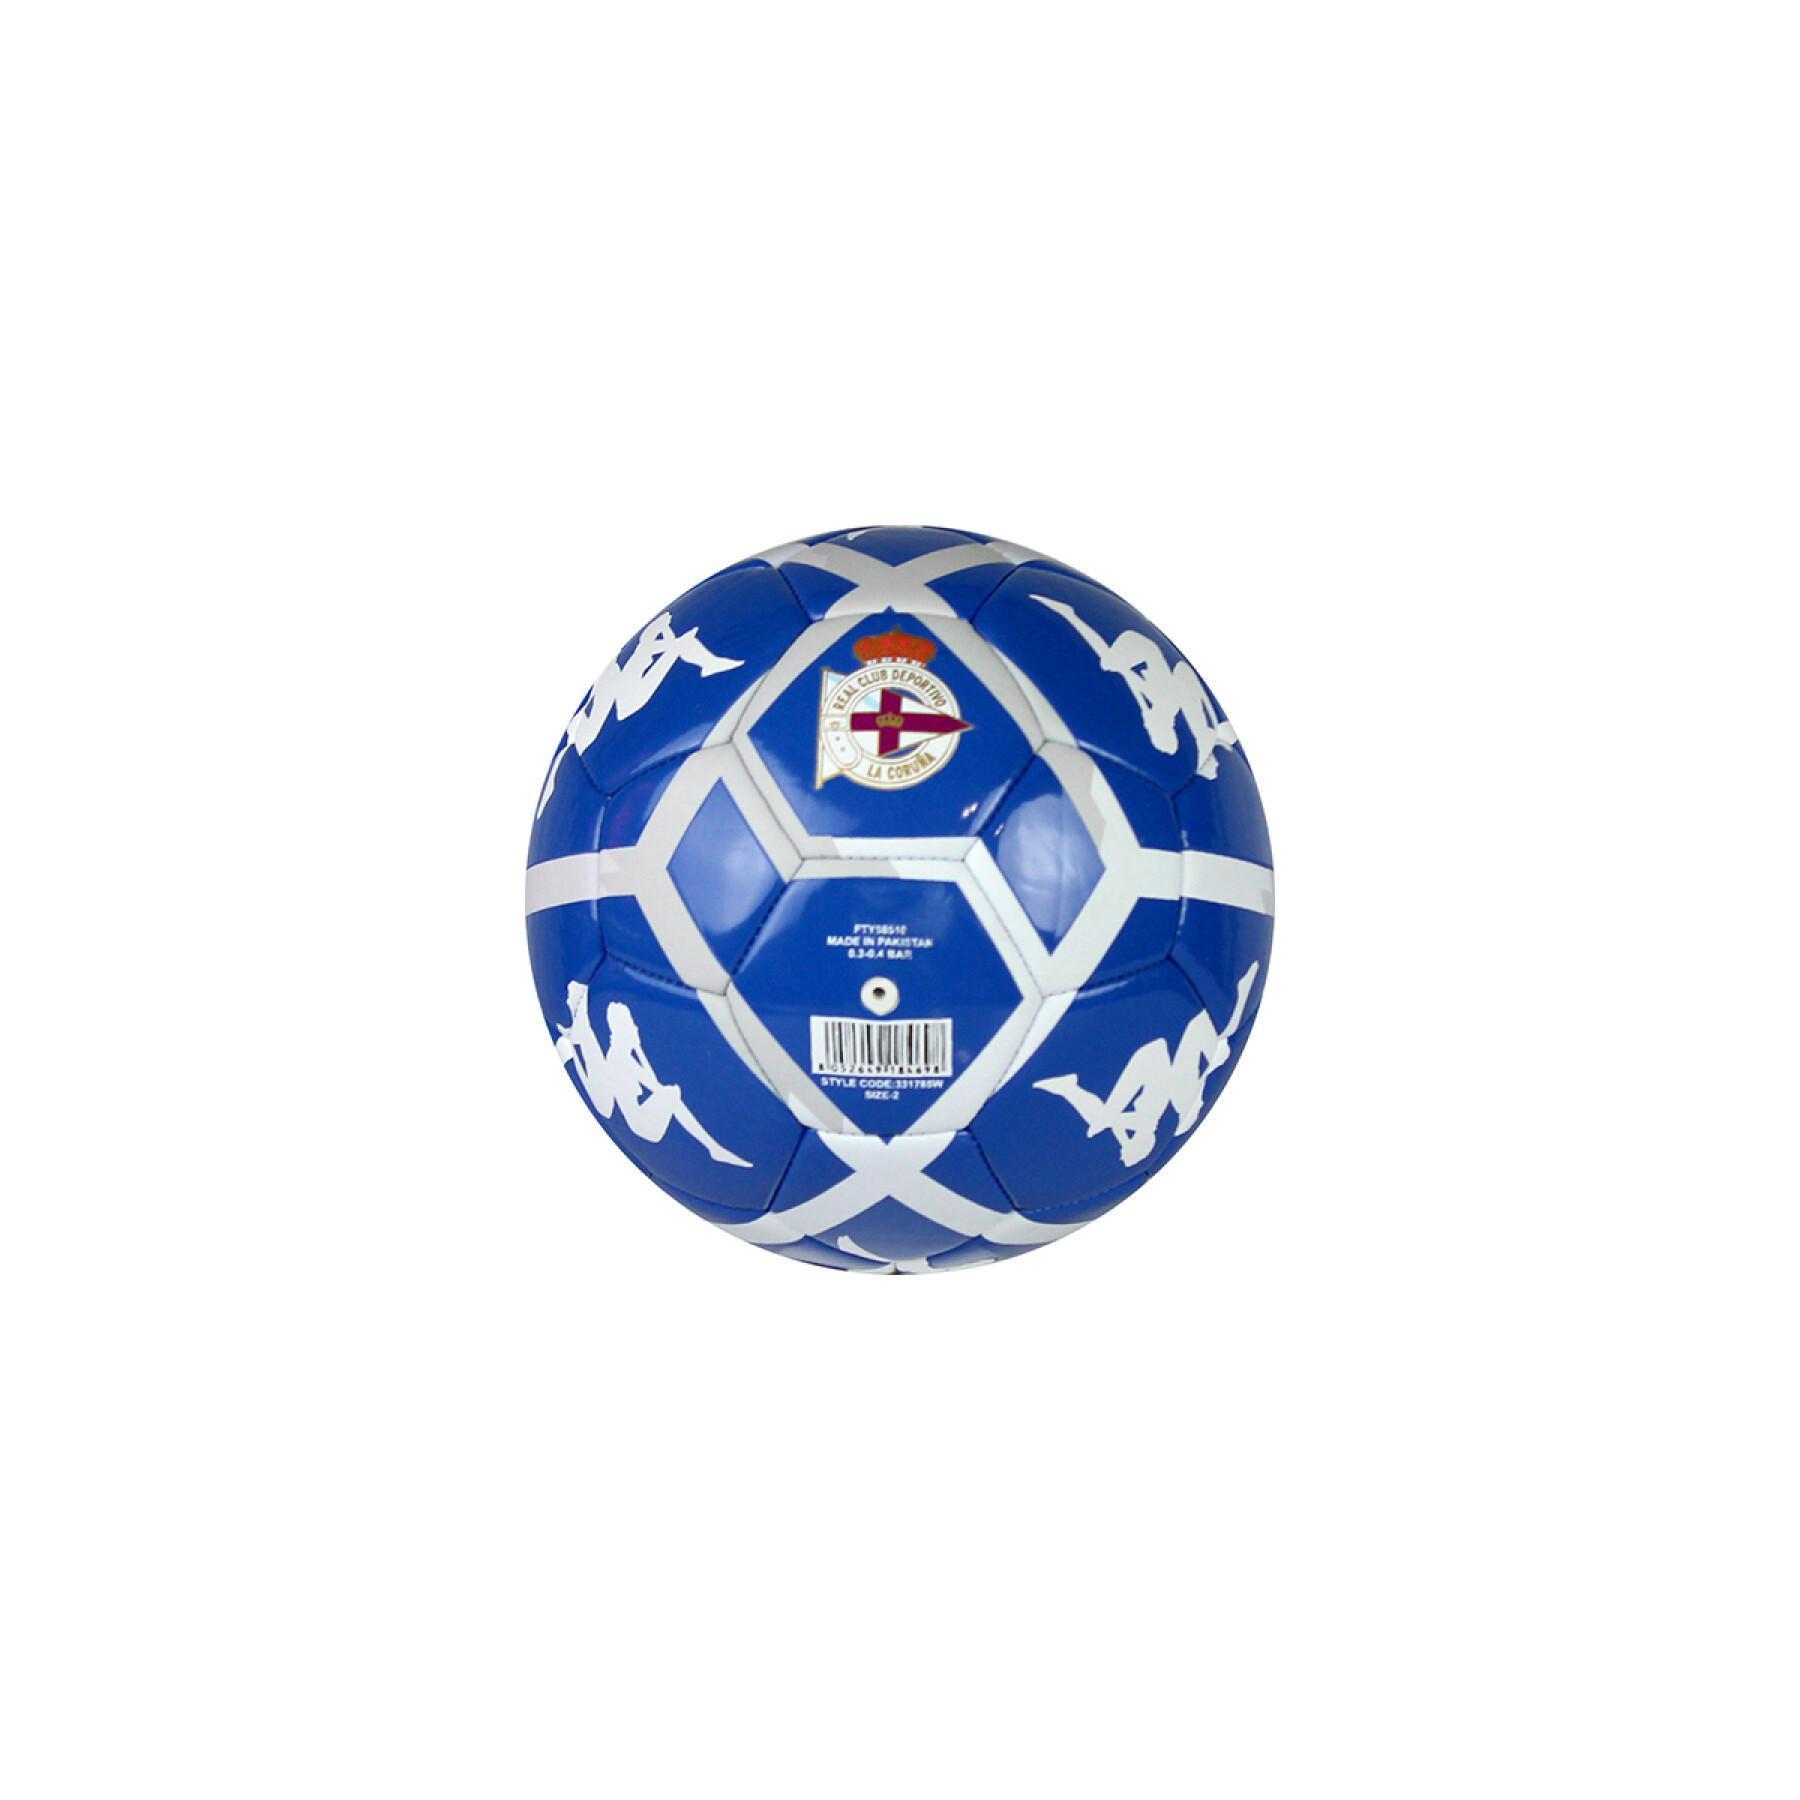 Mini ball Deportivo La Corogne 2021/22 player